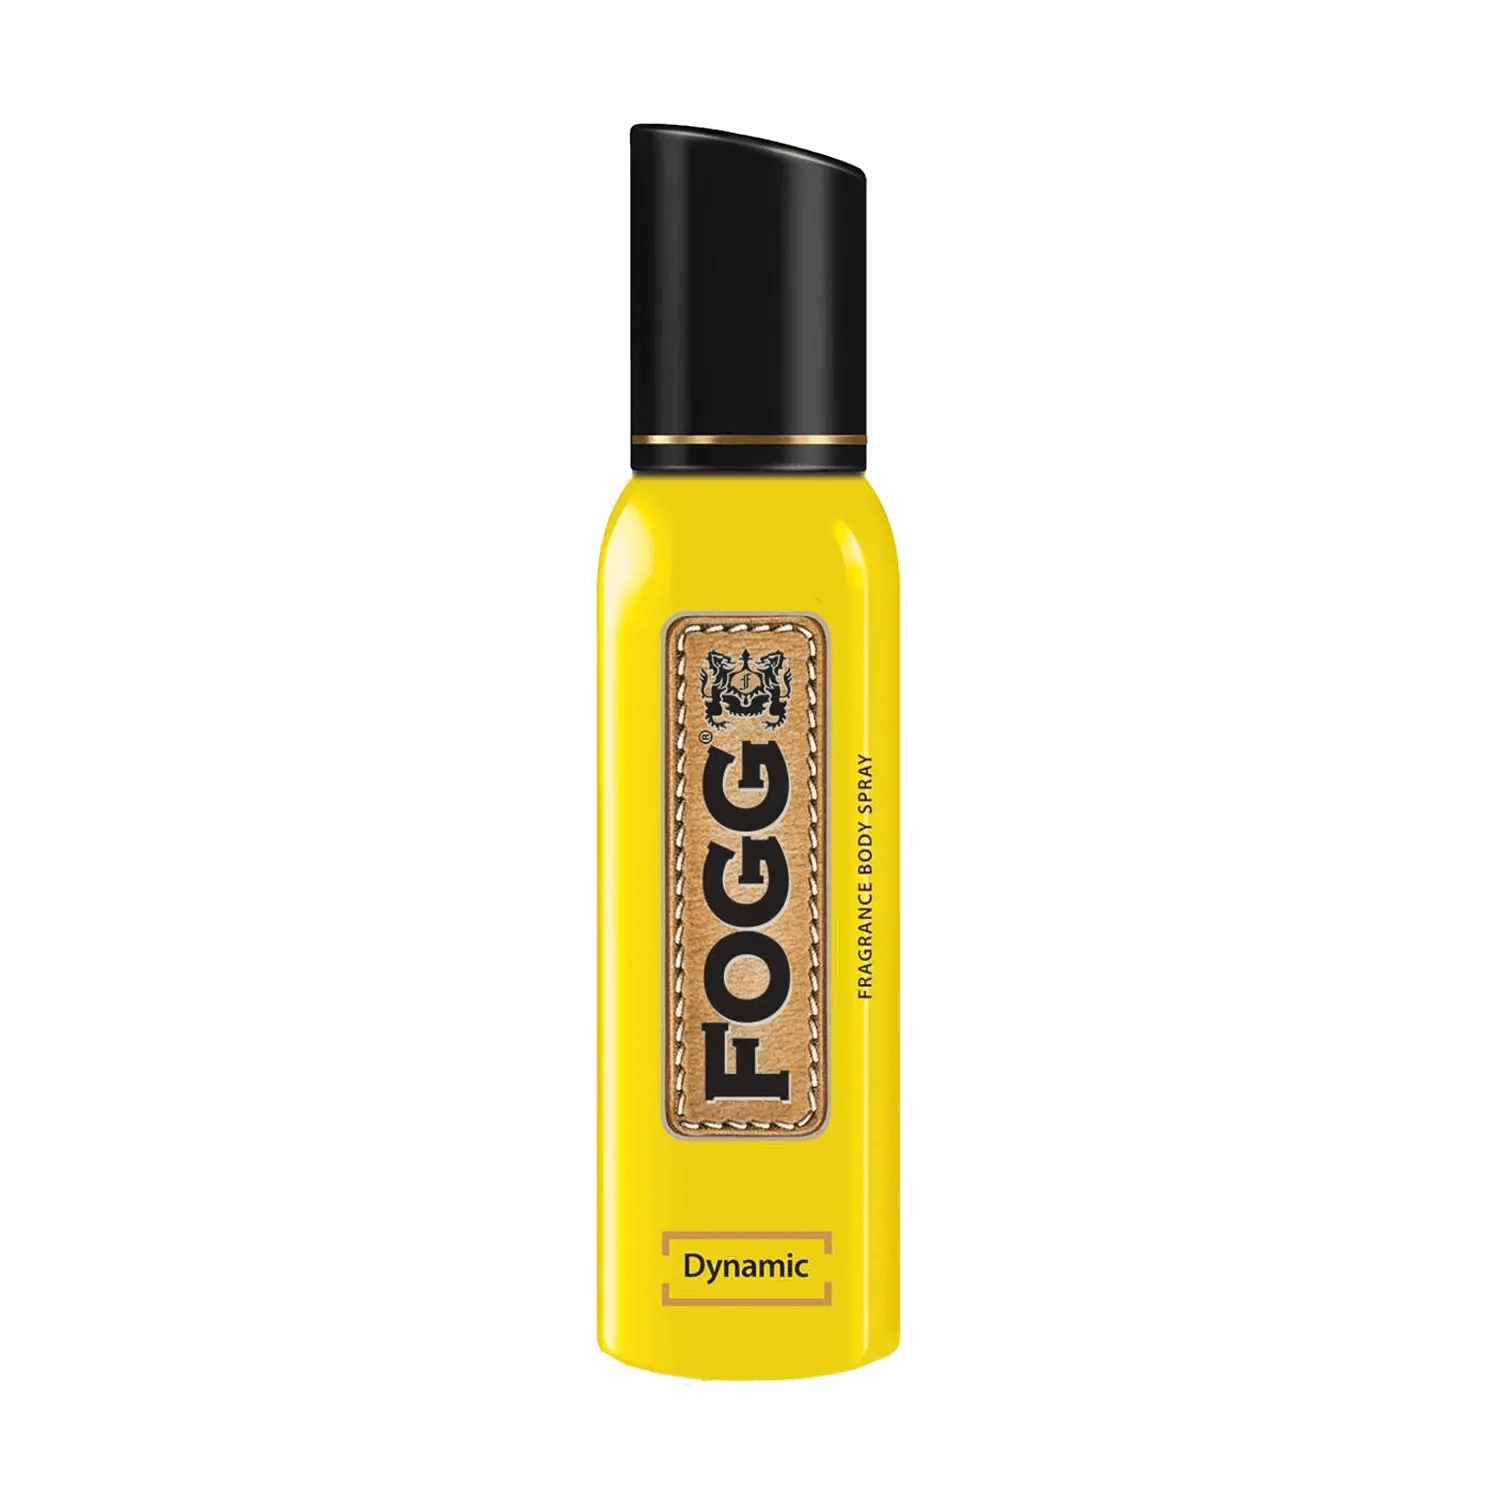 FOGG Dynamic Fragrance Body Spray (150ml)